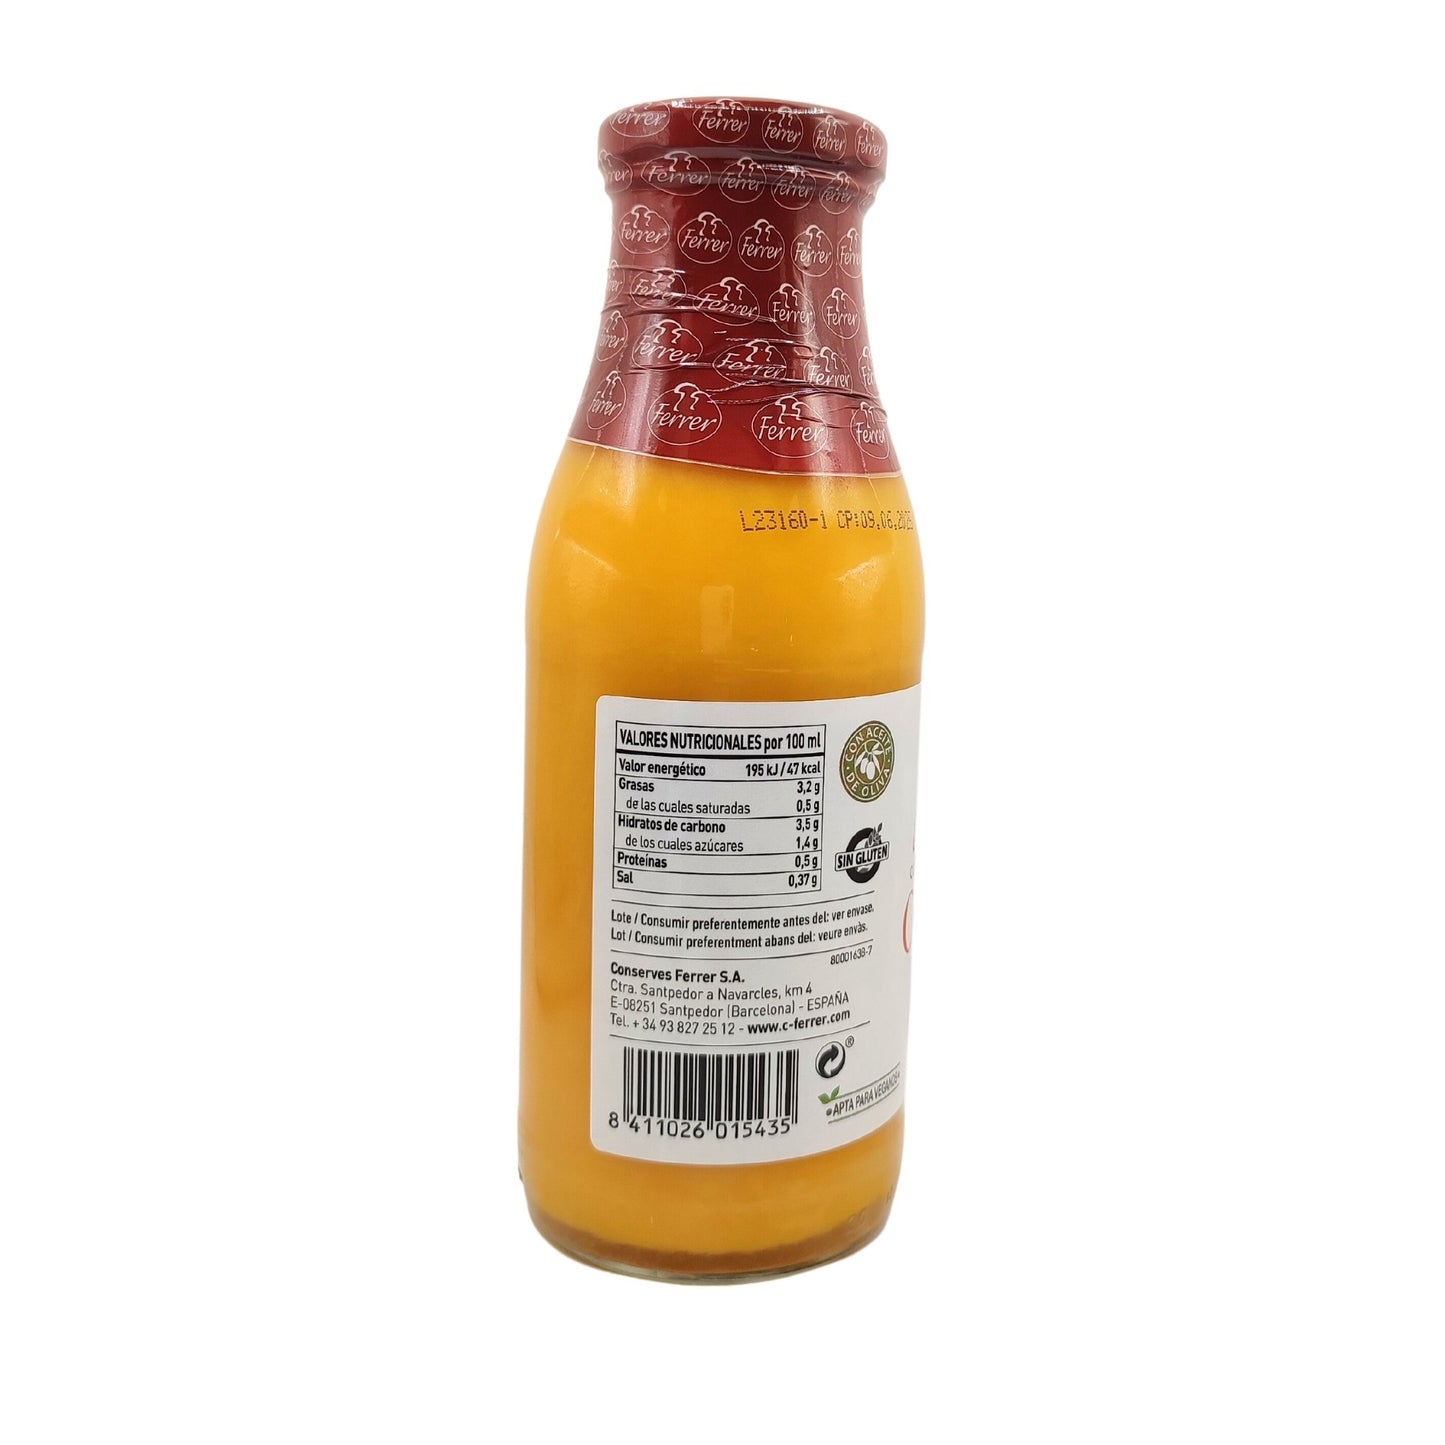 Crema de calabaza y zanahoria - 485 ml - Ferrer